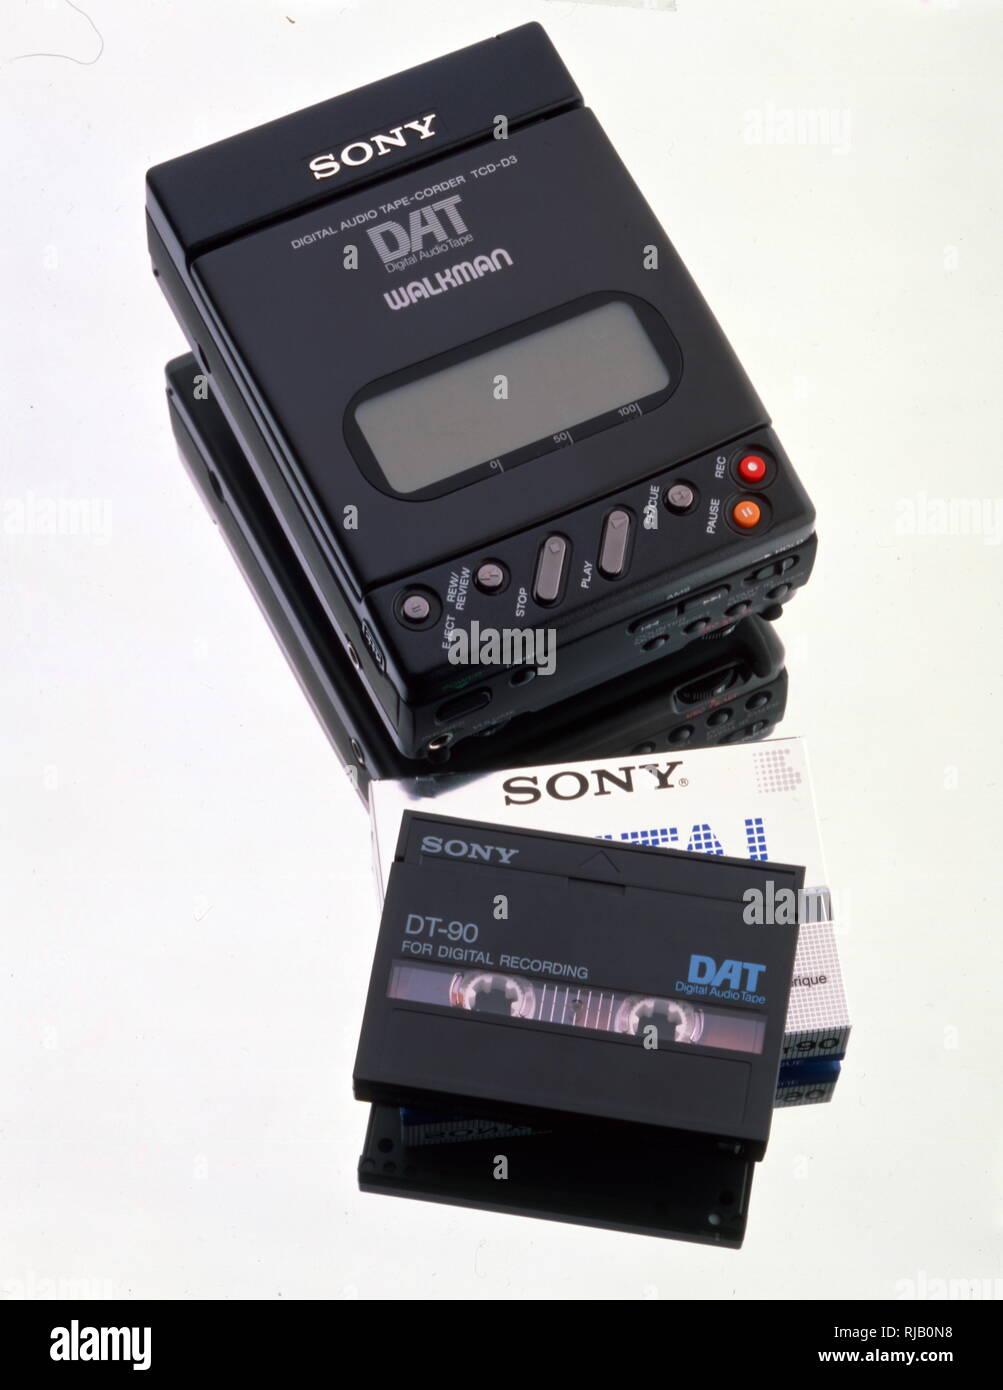 Reshow Lettore Cassette Audio - Registratore di Cassetta Portatile